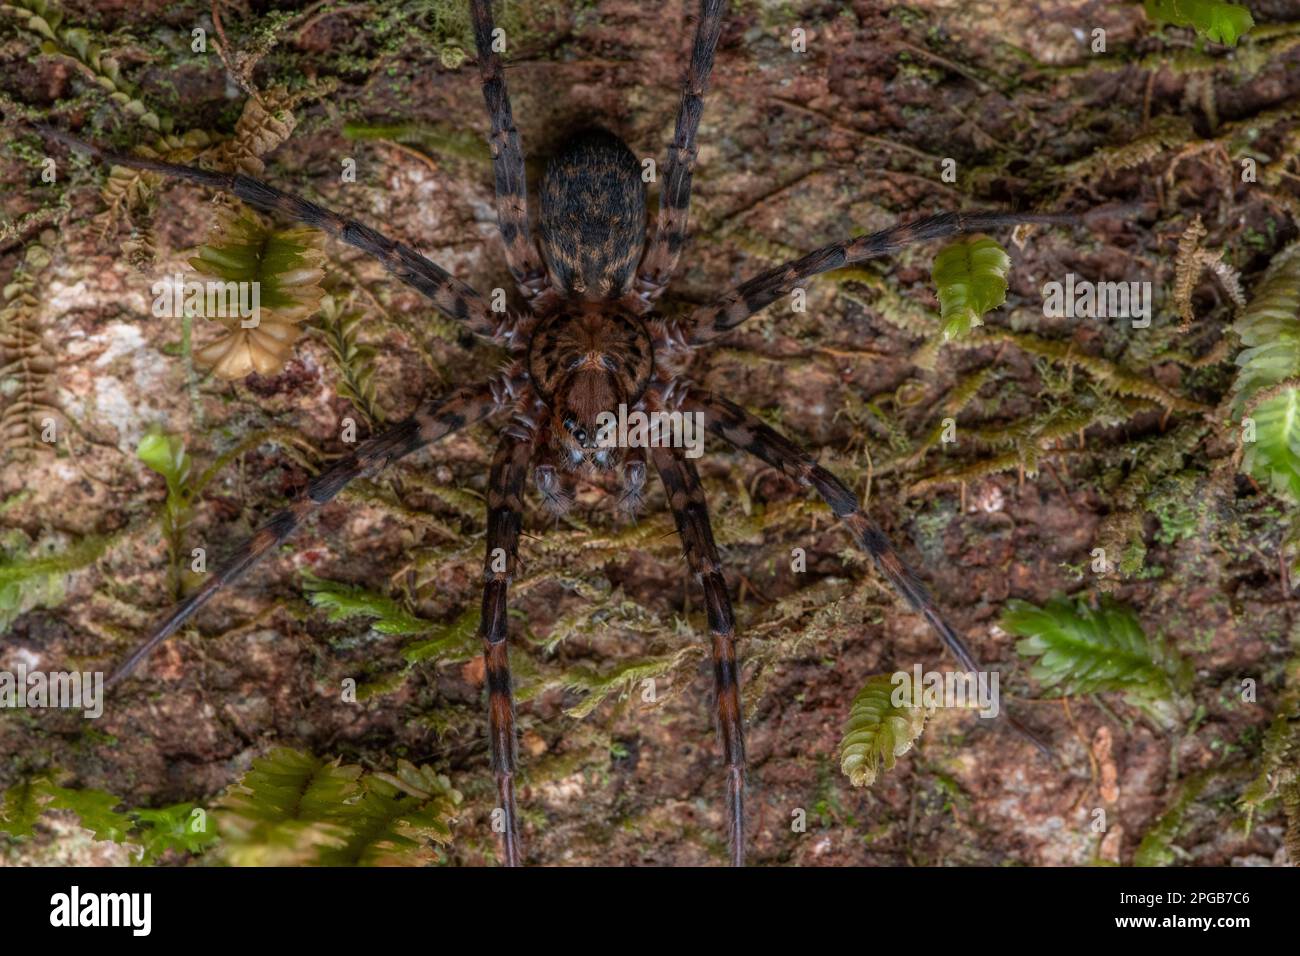 Cycloctenus westlandicus eine Spinnenart aus dem Fiordland-Nationalpark, Aotearoa Neuseeland, die gut getarnt an der Rinde eines Baumstamms ist. Stockfoto